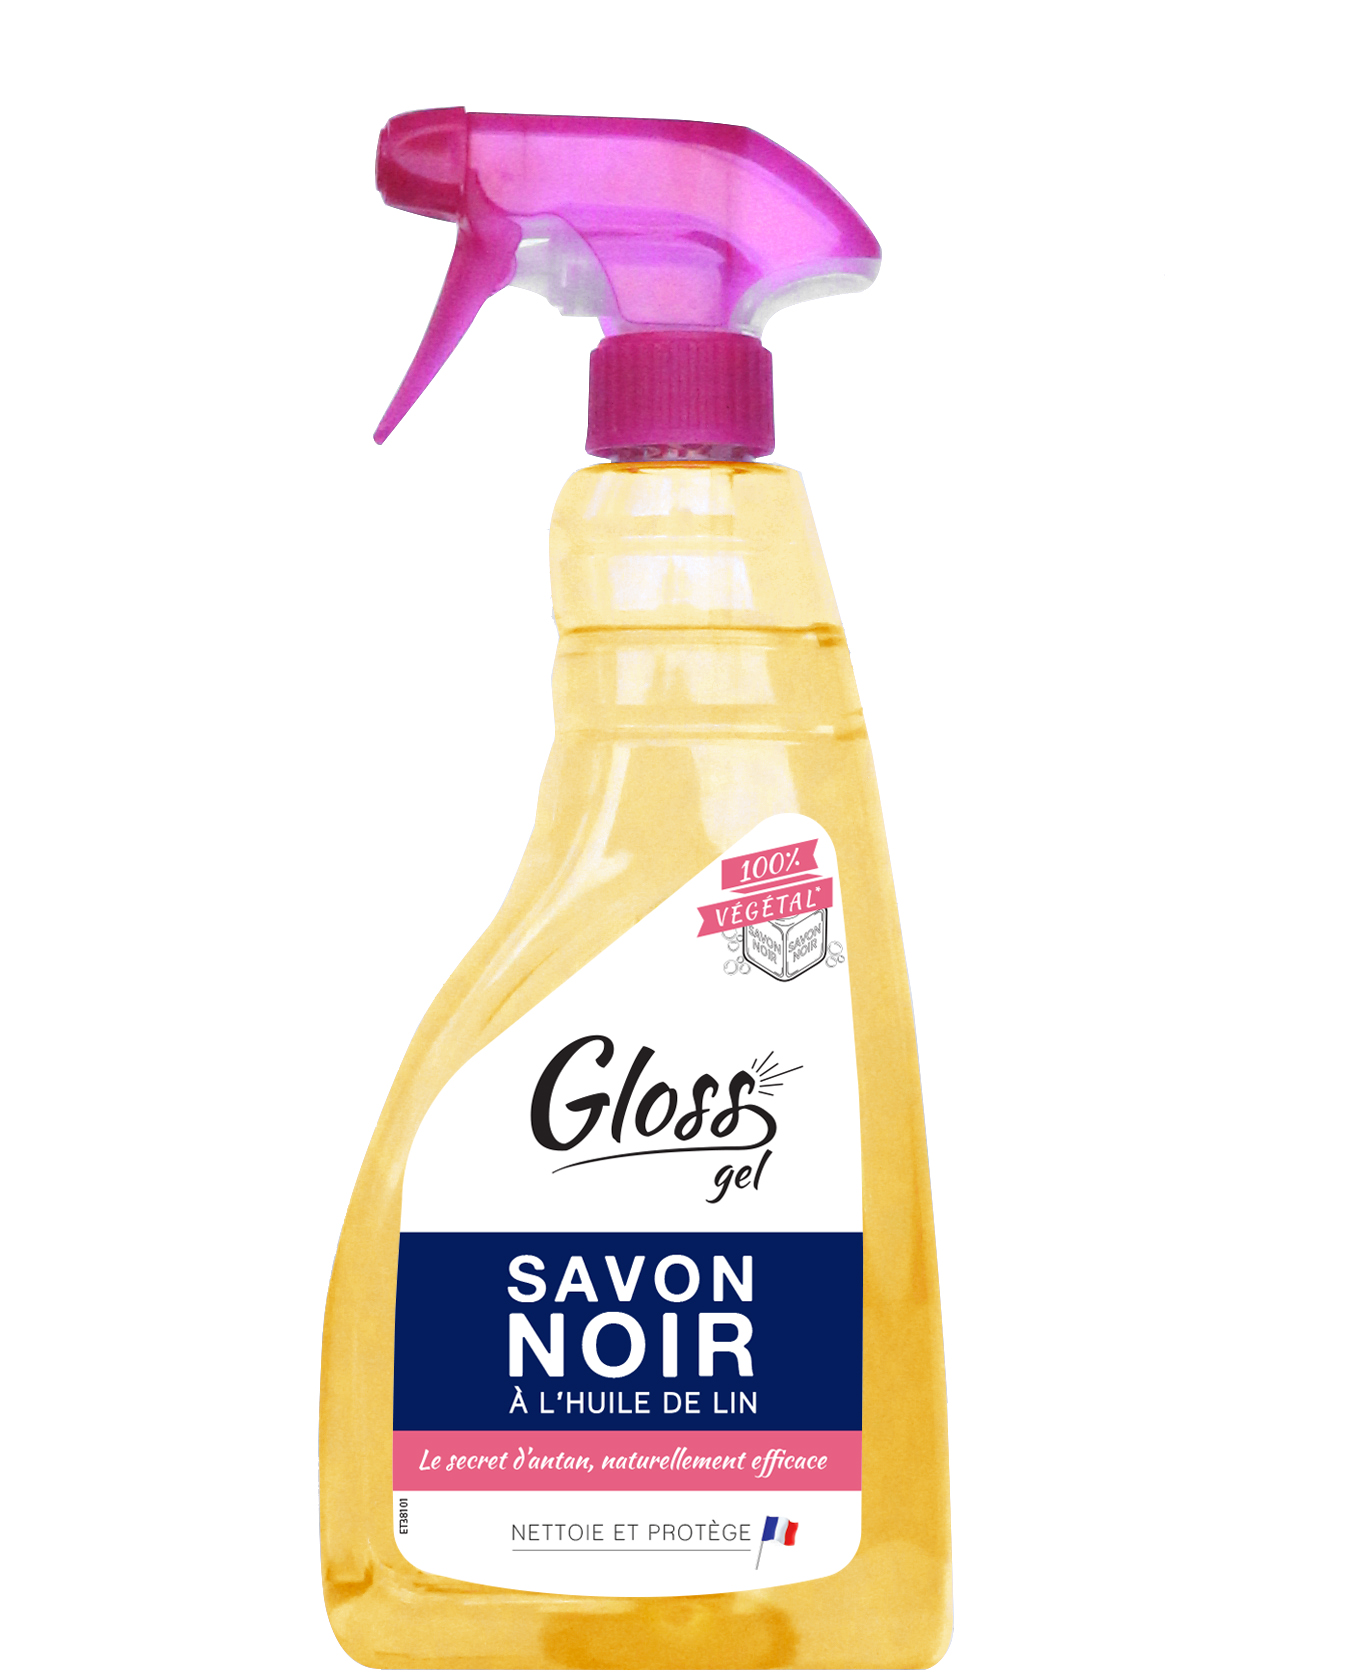 Gloss savon noir à l'huile de lin 750 ml